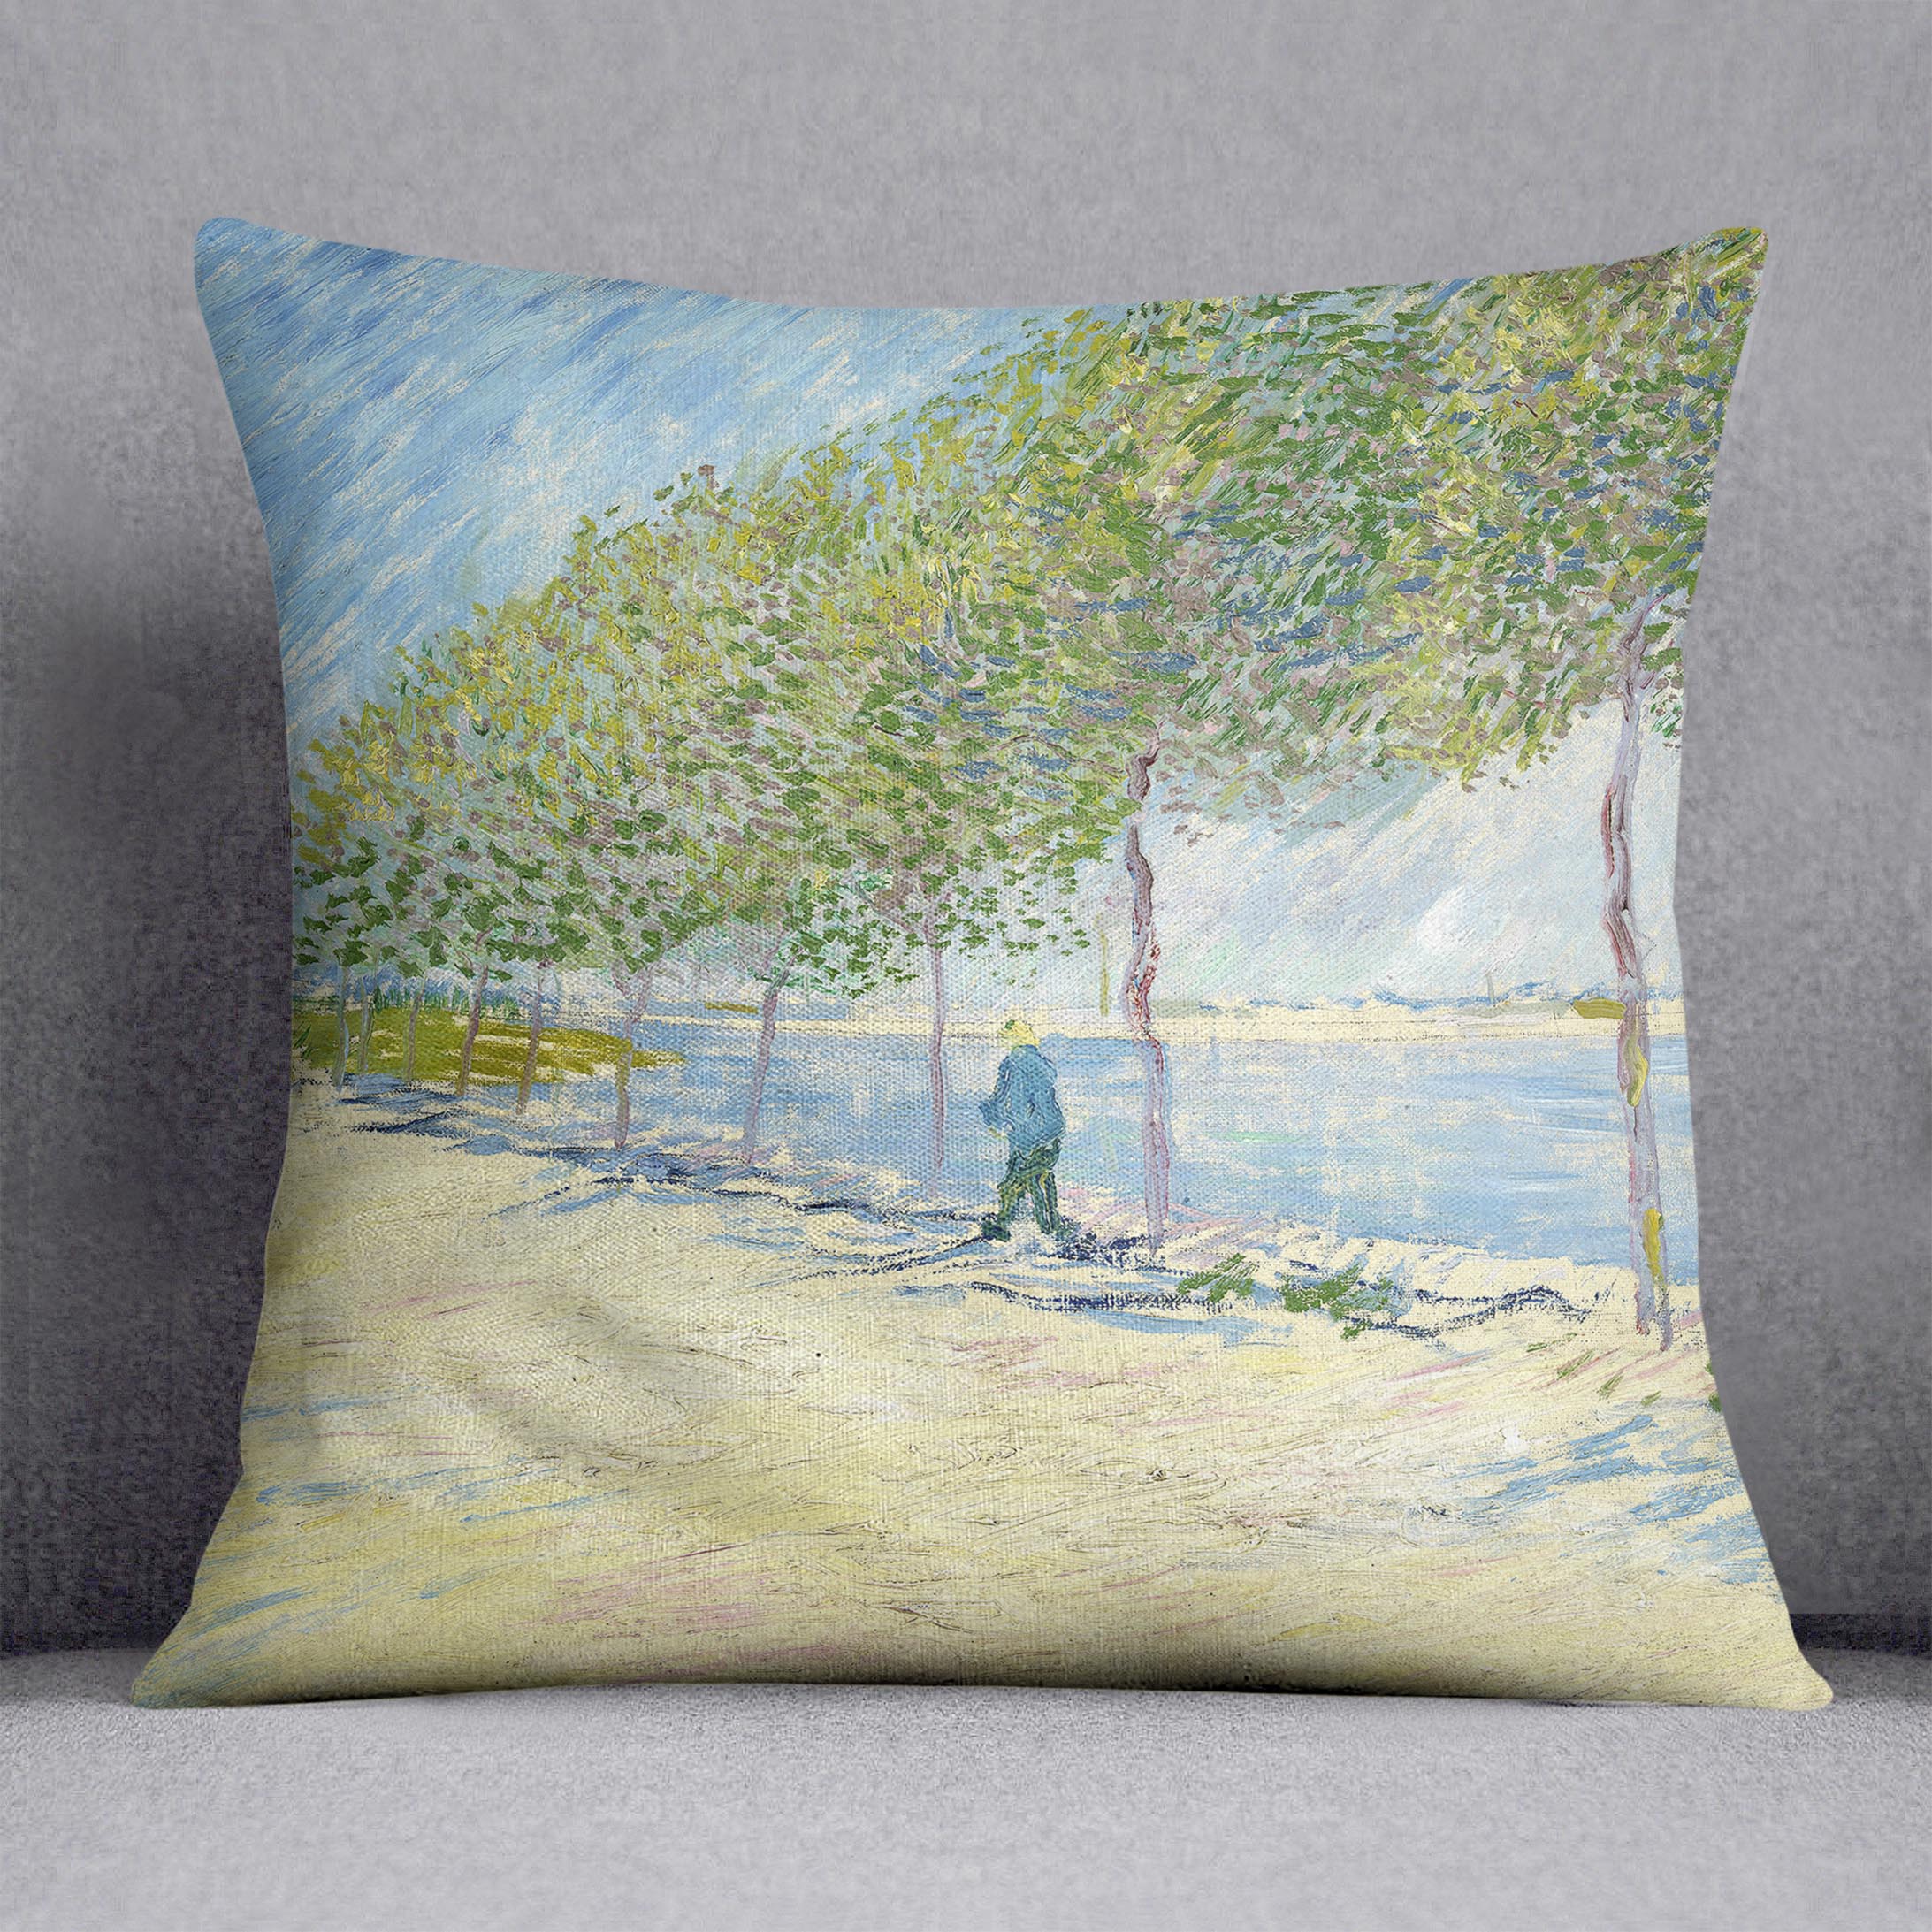 Along the Seine by Van Gogh Cushion